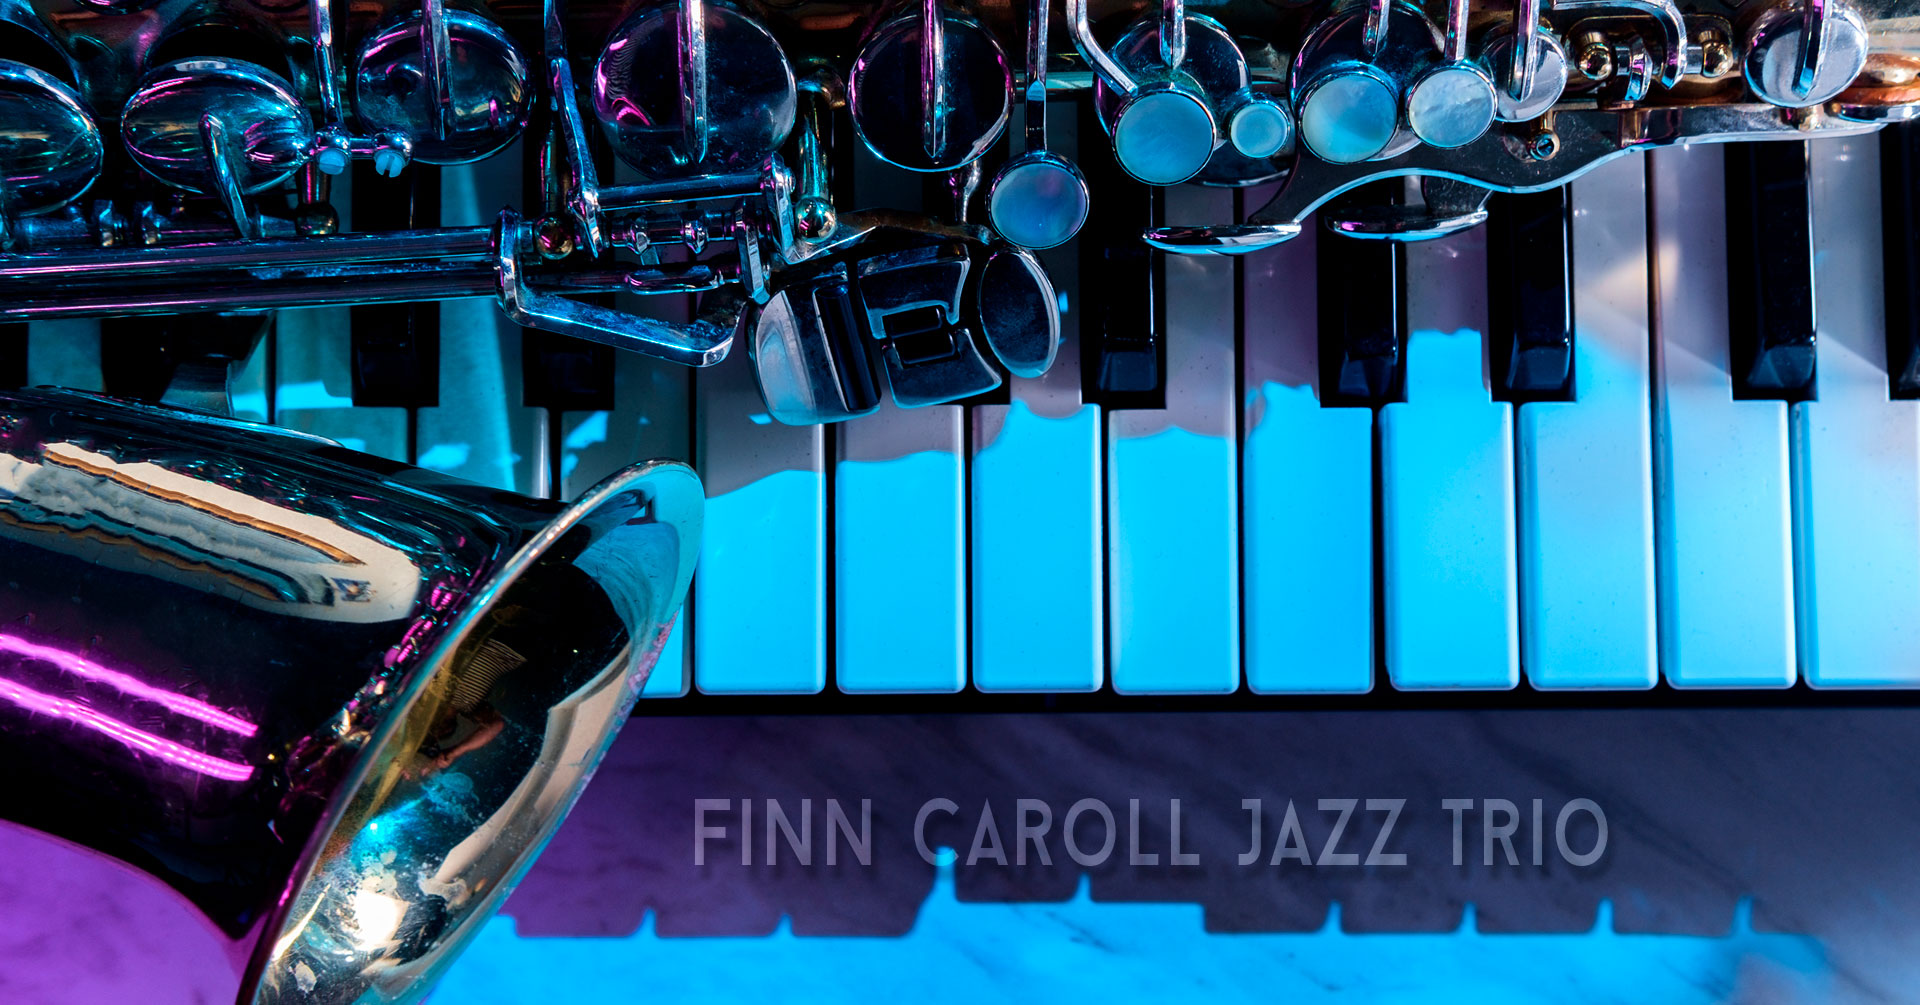  The Finn Caroll Jazz Trio